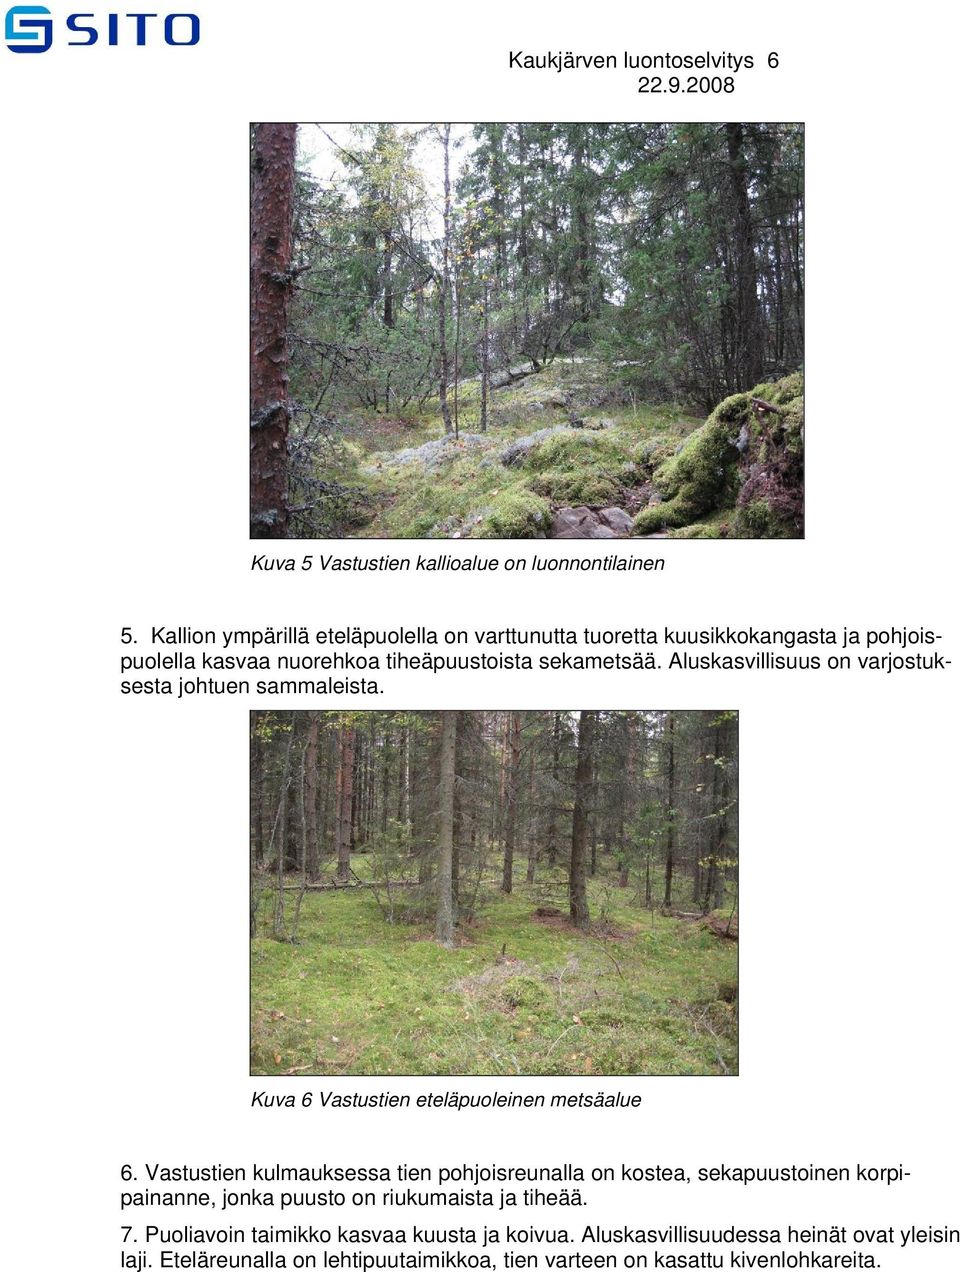 Aluskasvillisuus on varjostuksesta johtuen sammaleista. Kuva 6 Vastustien eteläpuoleinen metsäalue 6.